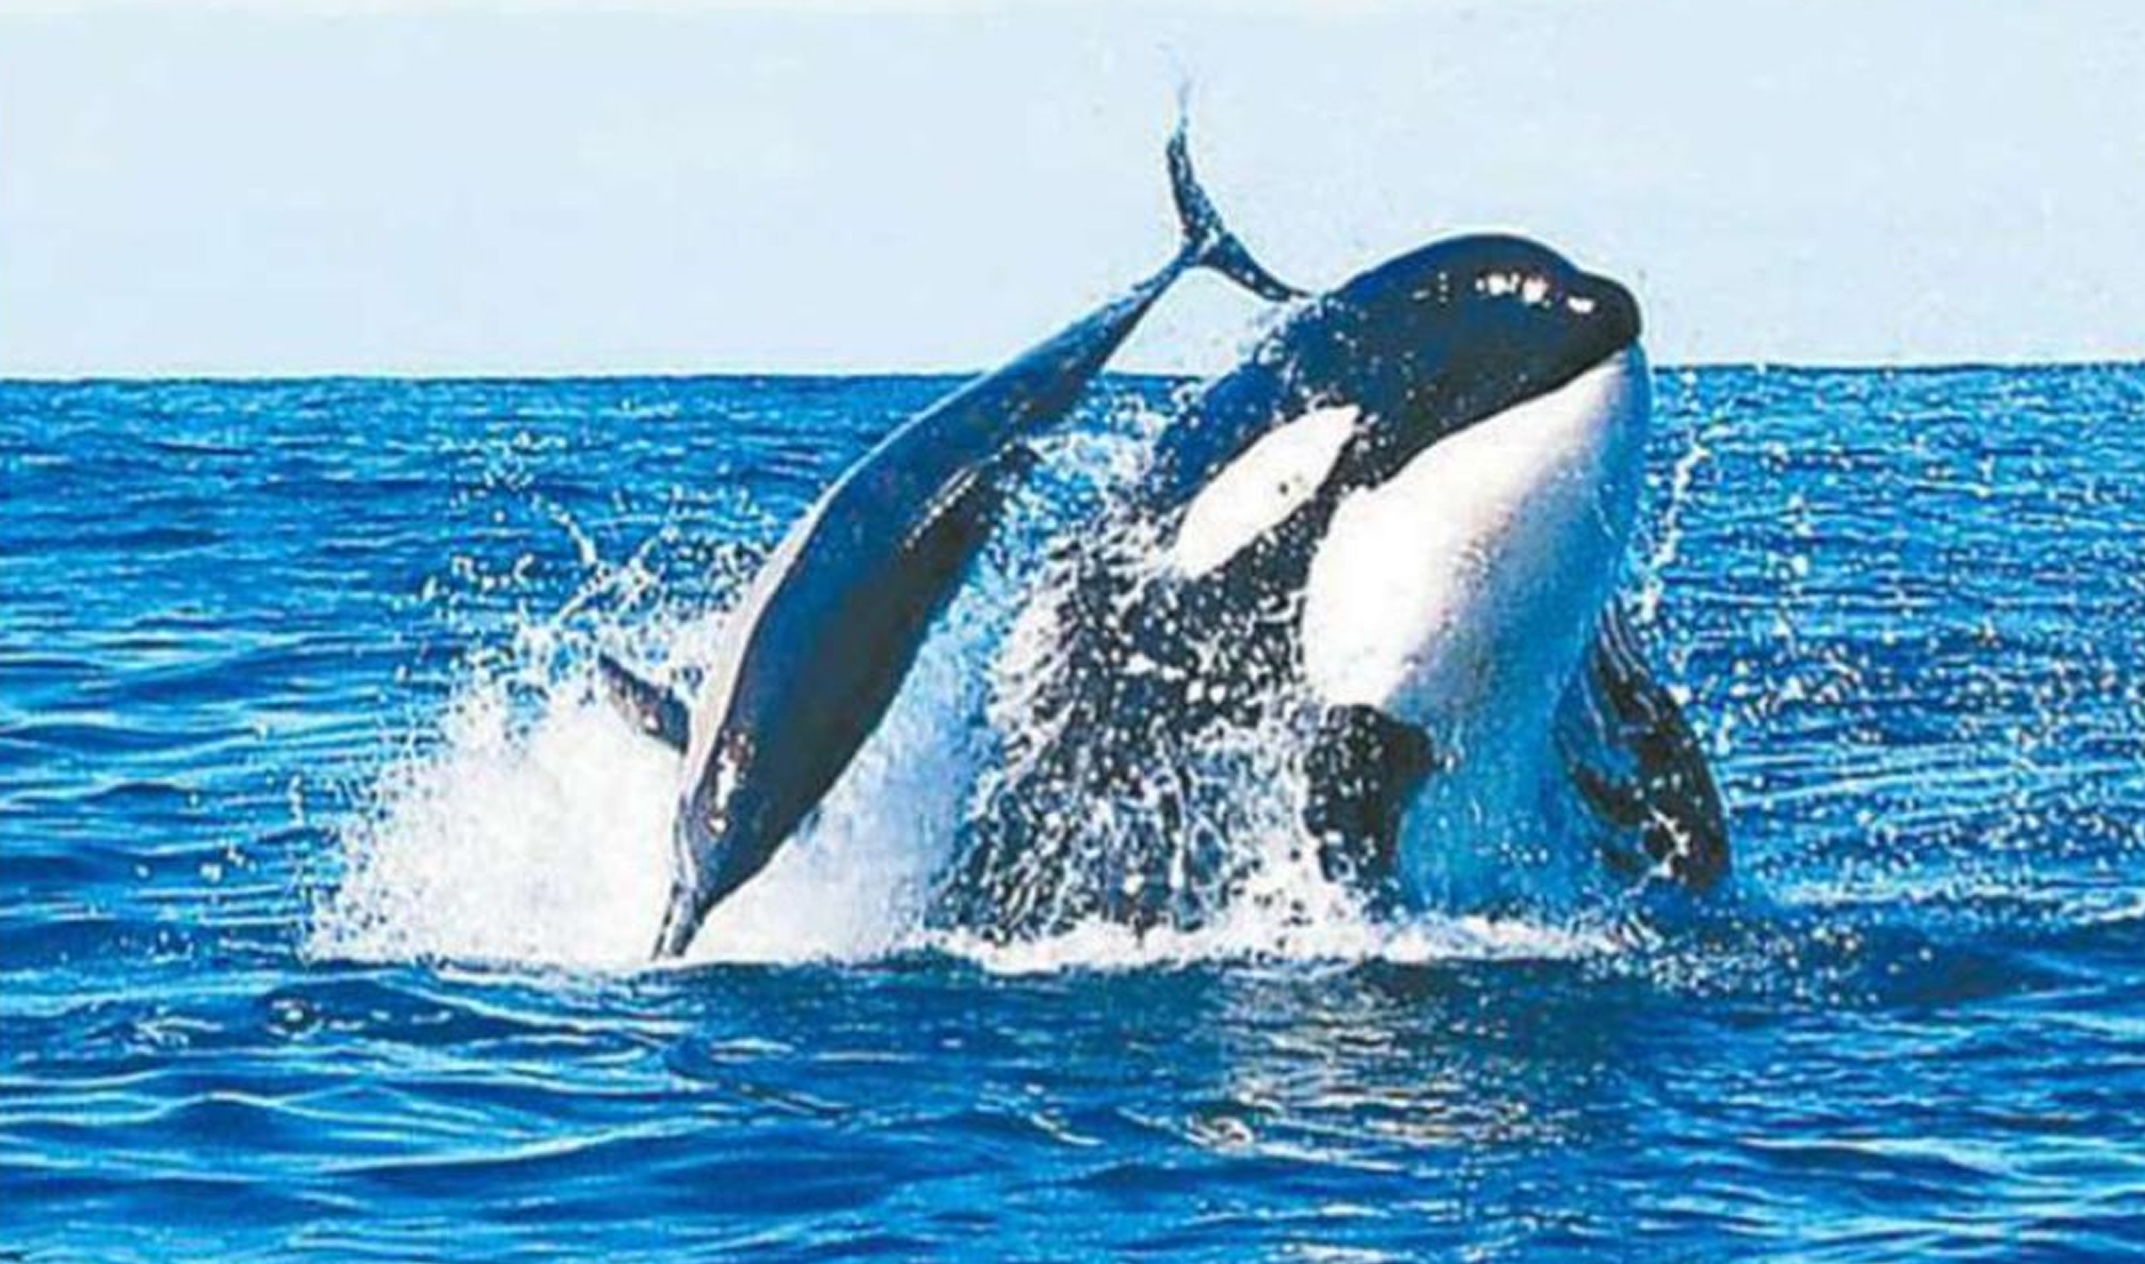 всемирный день защиты морских млекопитающих